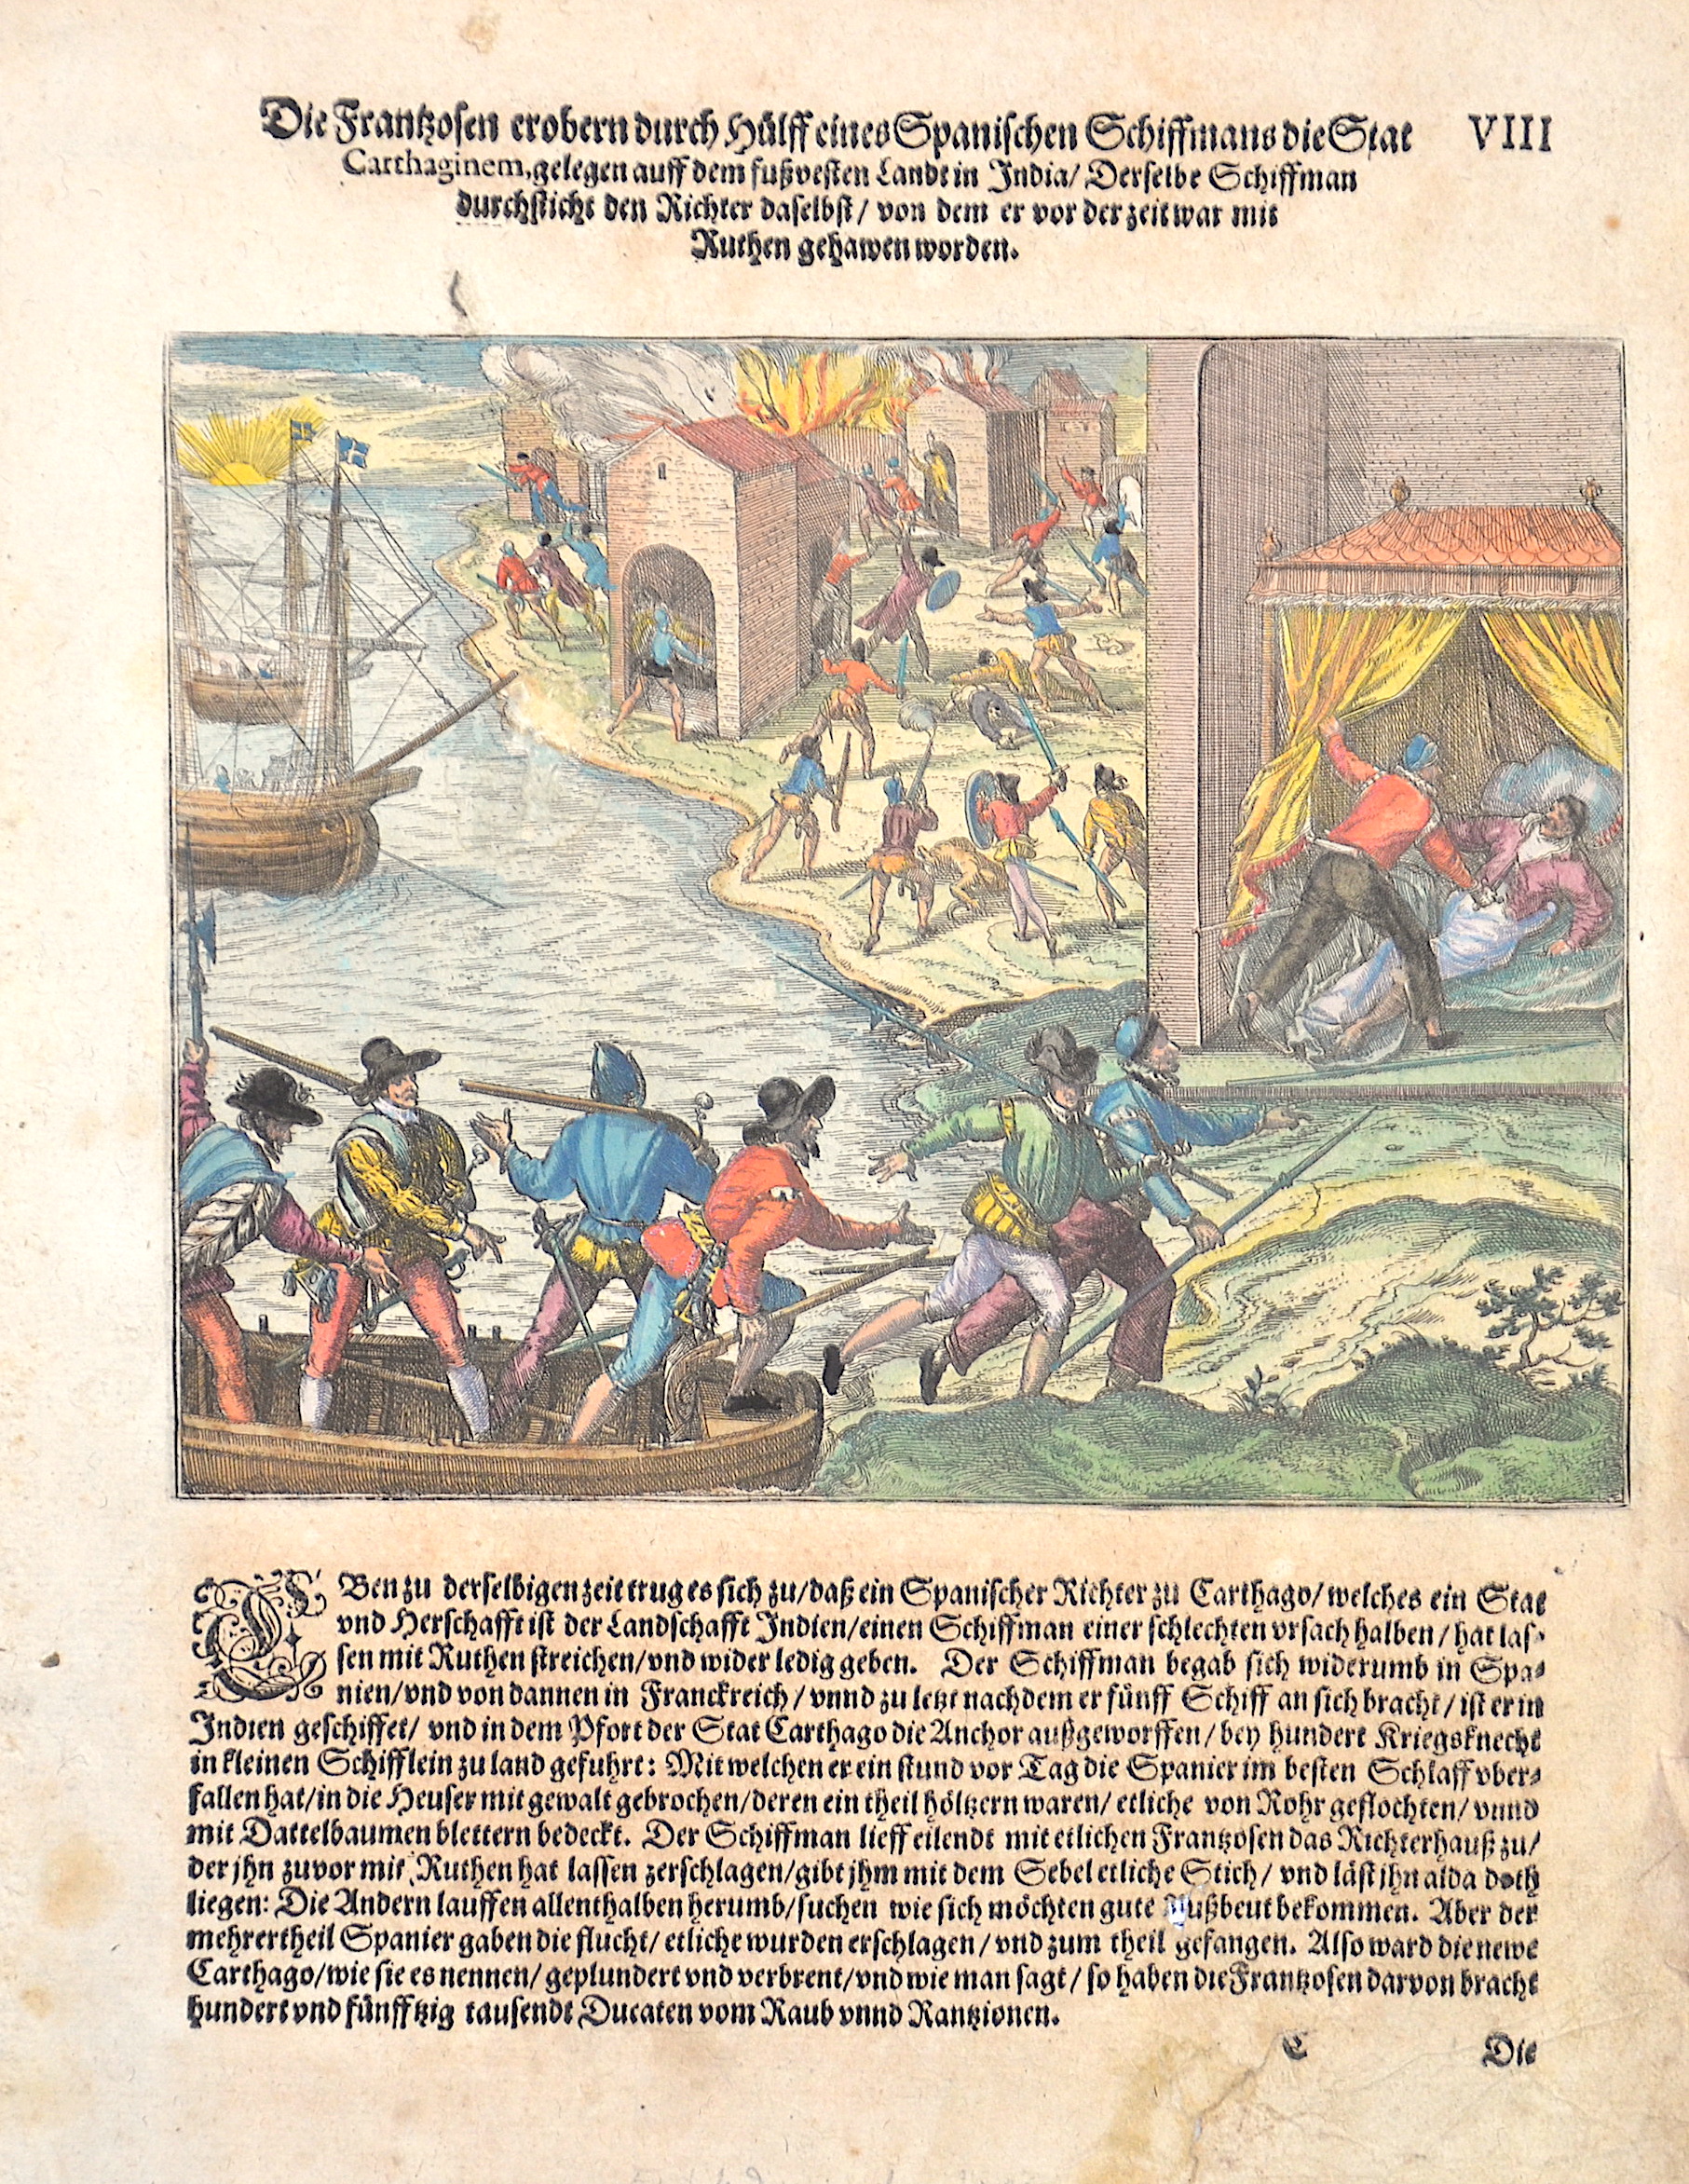 Bry, de Theodor, Dietrich Die Franzosen erobern durch Hülff eines Spanischen Schiffmans die Stat Carthaginem, gelegen auff dem fußvesten Landt in India